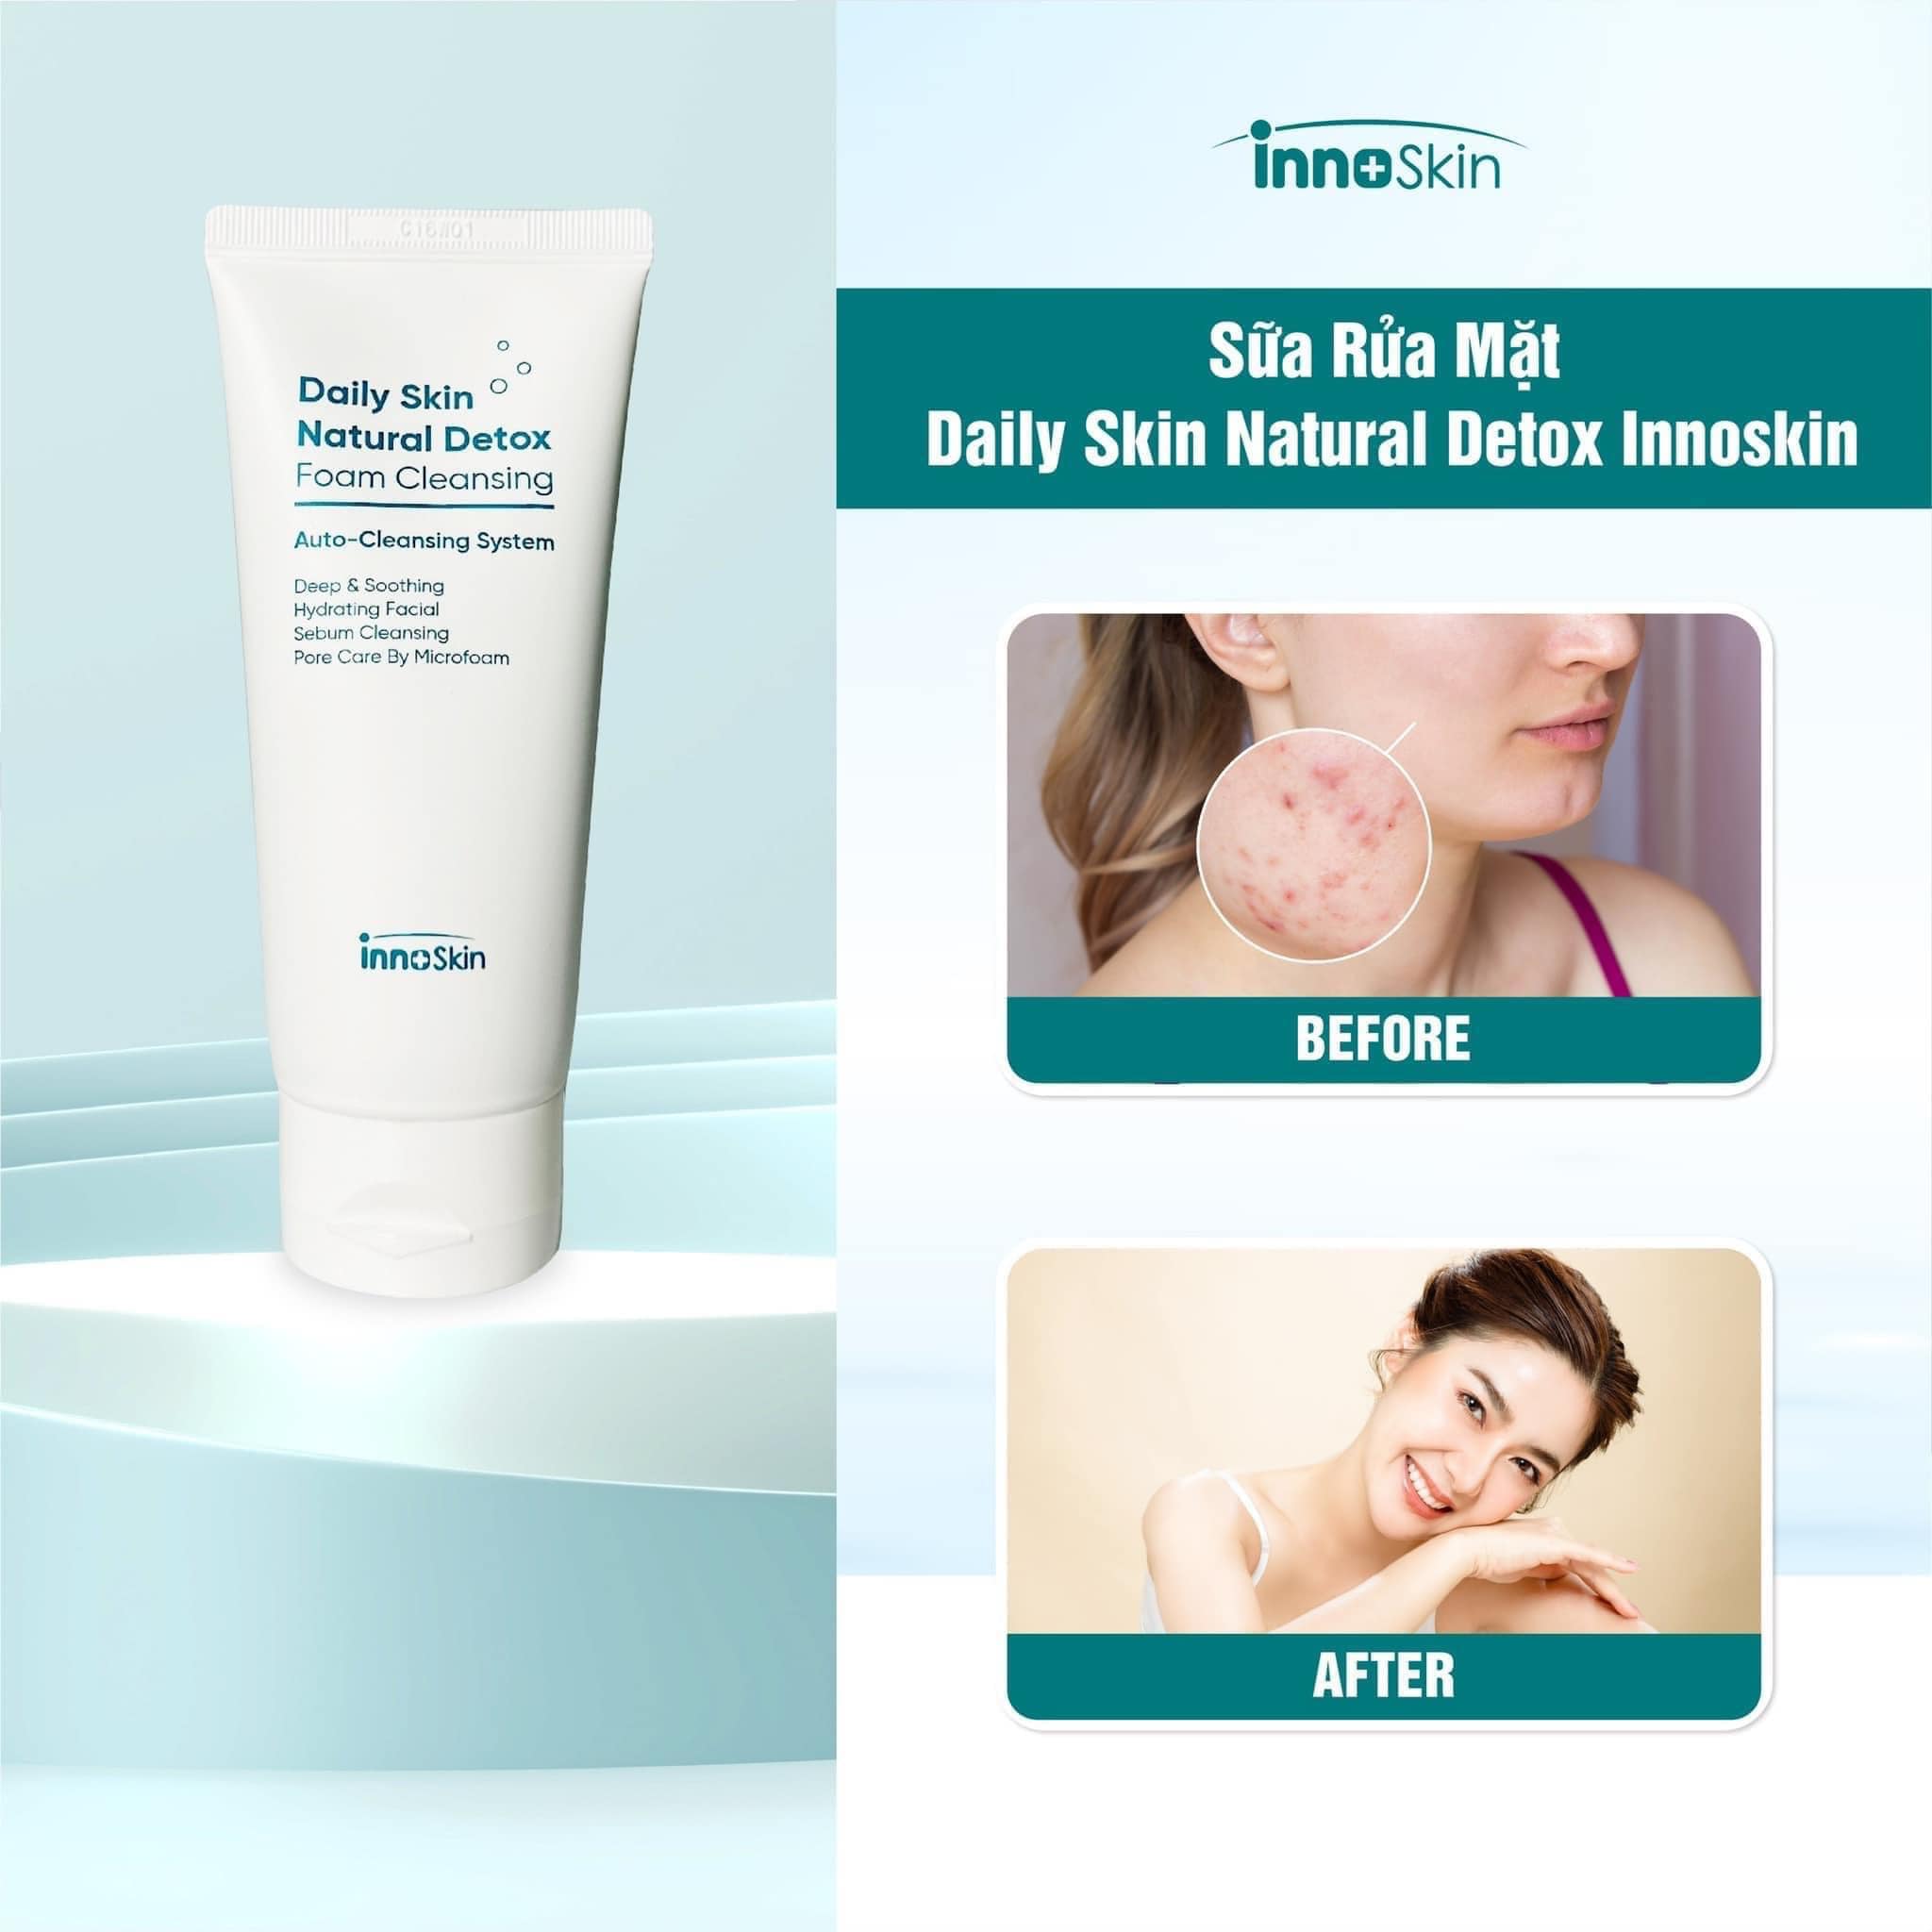 Sữa Rửa Mặt Daily Skin Natural Detox - Foam Cleansing mang lại 6 công dụng ưu việt